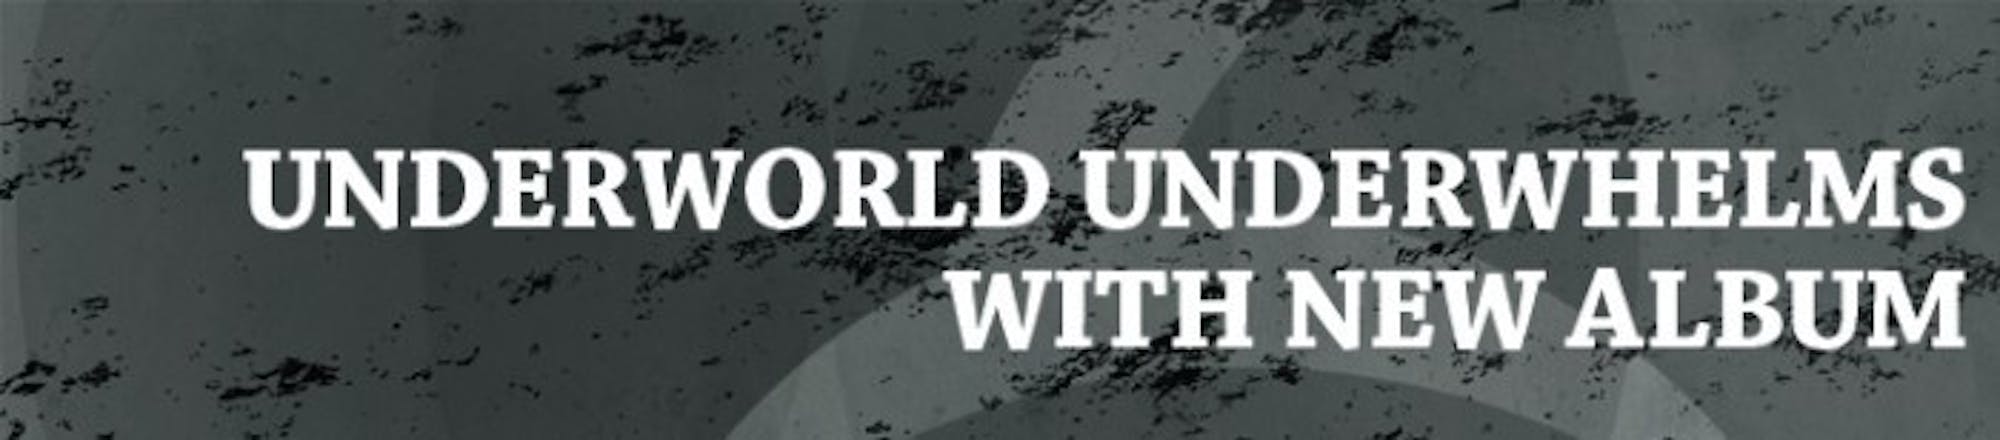 Underworld_Scene_Web